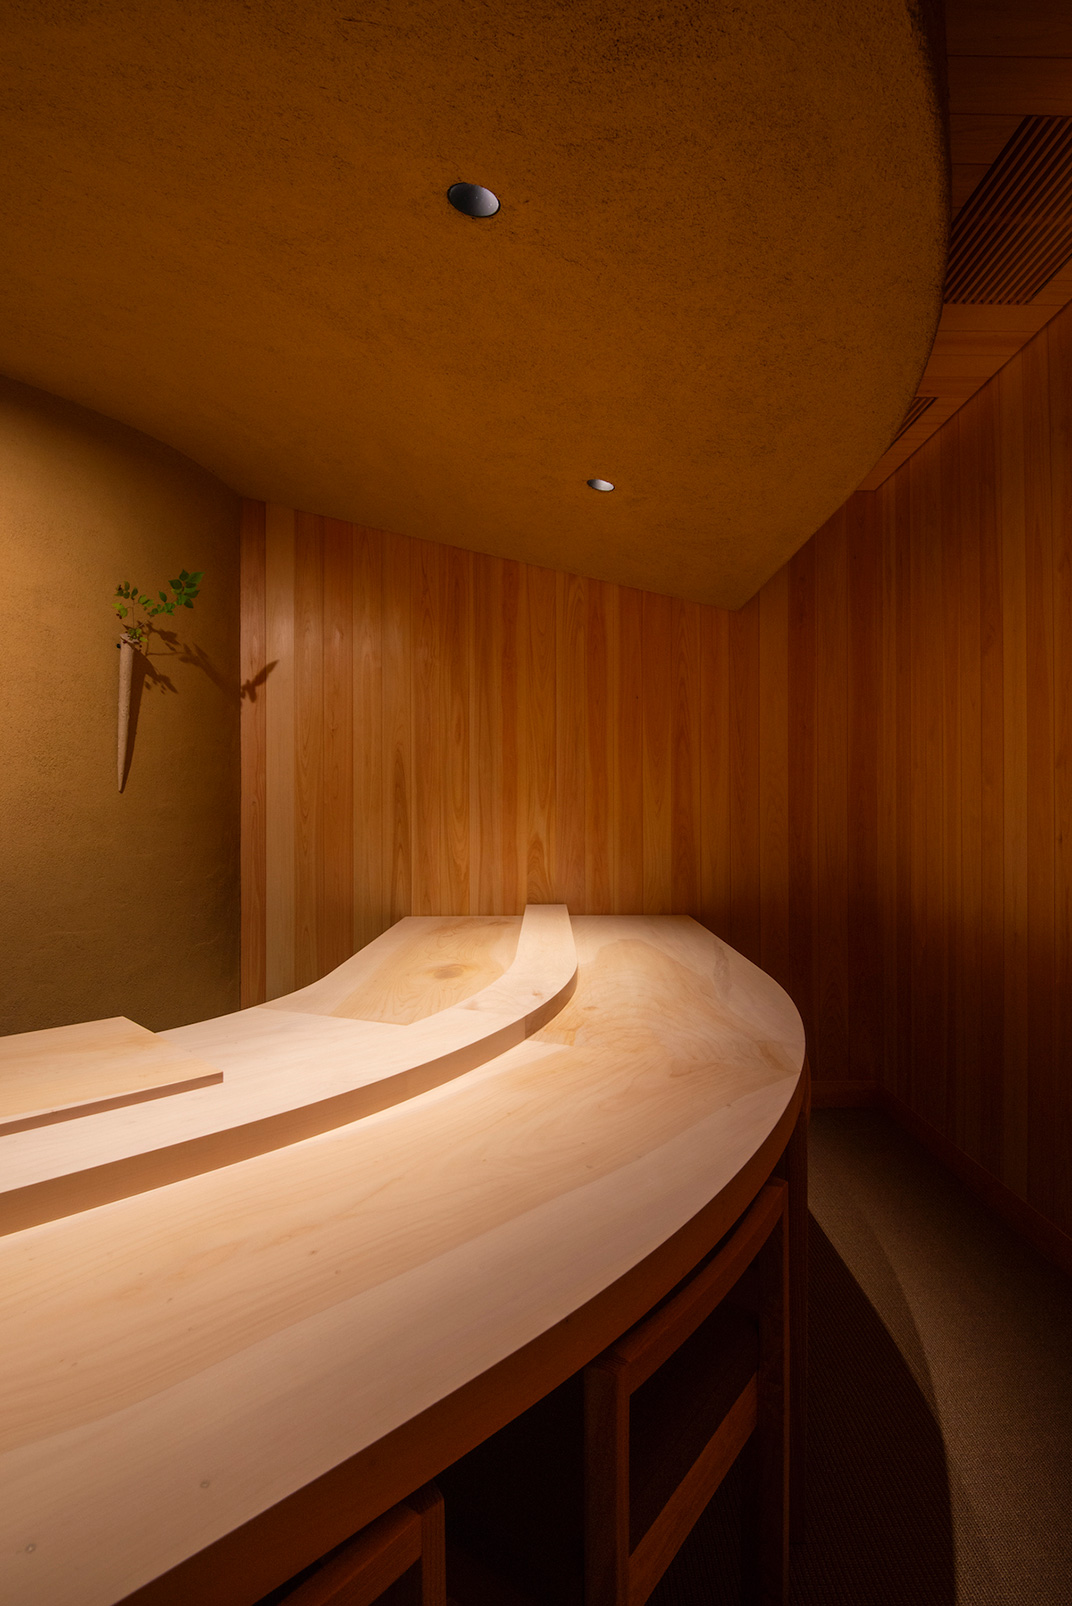 最低约20平方米的寿司餐厅 餐厅LOGO VI空间设计 全球餐饮研究所 视觉餐饮 深圳 武汉 杭州 上海 广州 北京